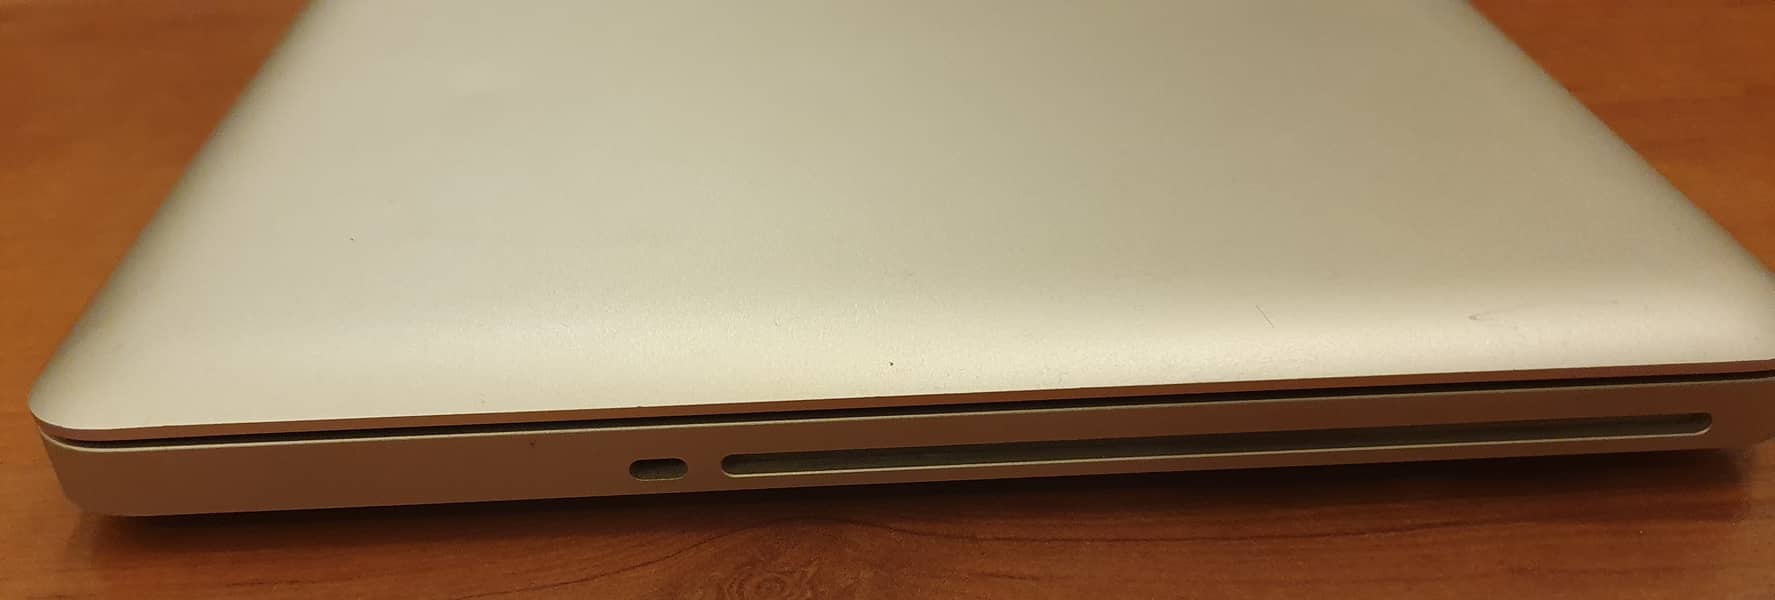 MacBook Pro 13-inch Mid 2012 Core i7 2.9GHz - 8GB DDR3 RAM - 640GB HD 4